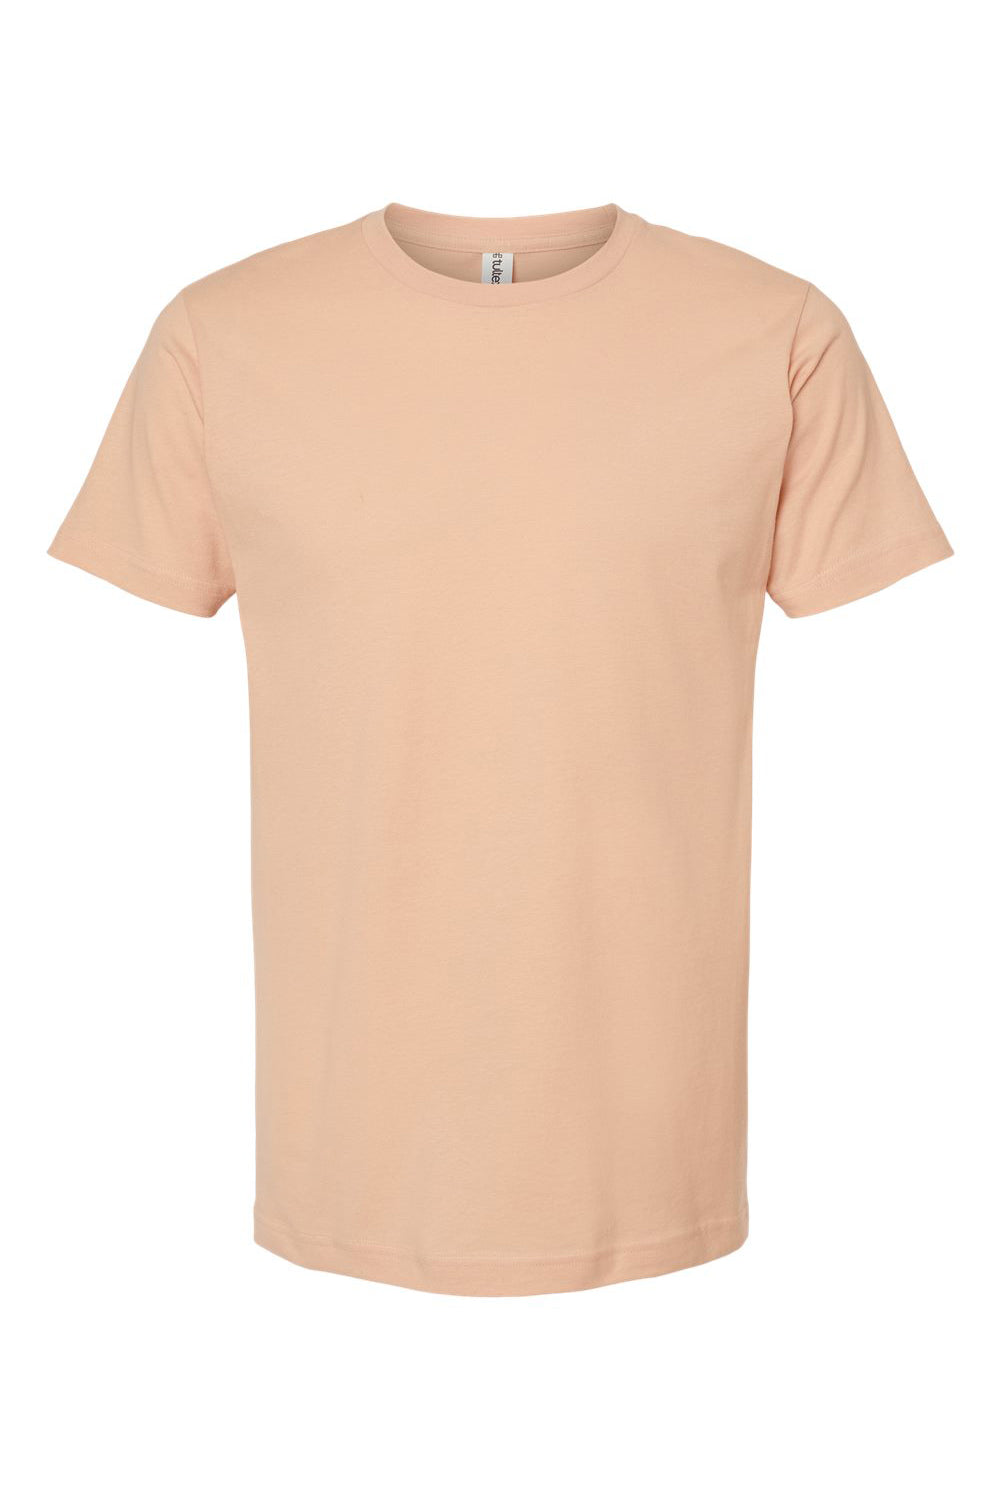 Tultex 202 Mens Fine Jersey Short Sleeve Crewneck T-Shirt Peach Flat Front